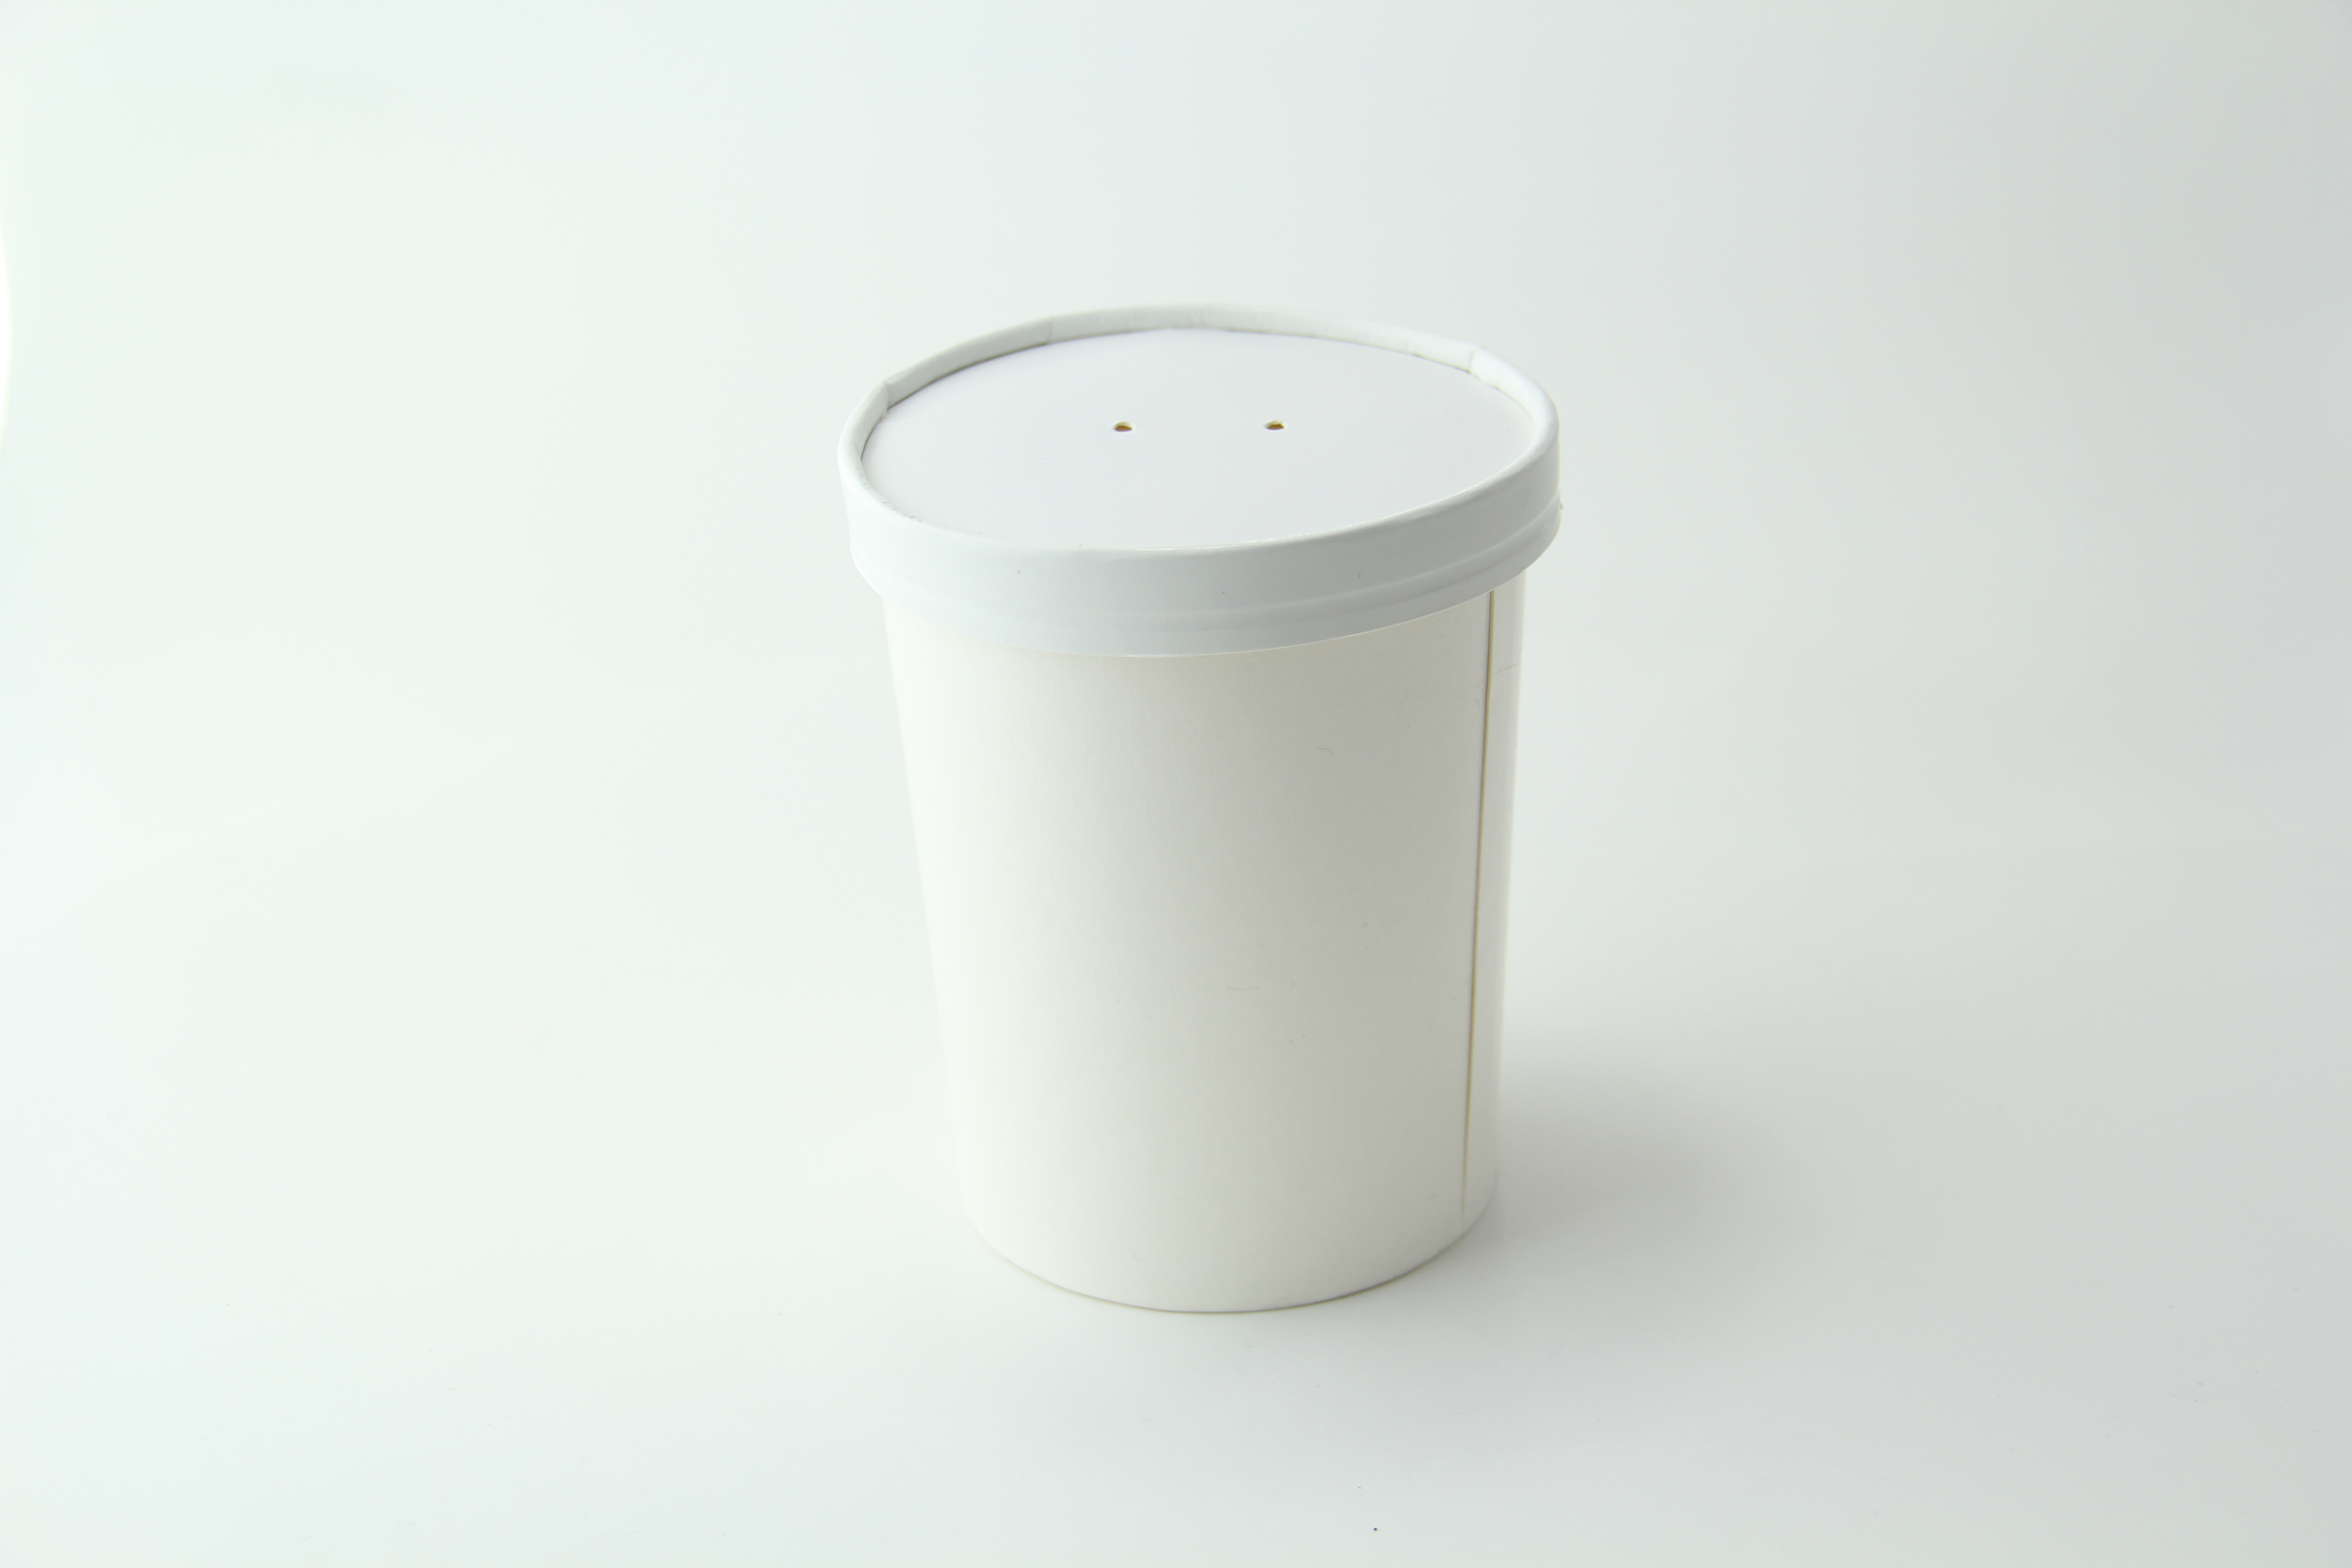 Gobelet soupe en carton, PP-thermo, 350ml, blanc (048230), Neutraal